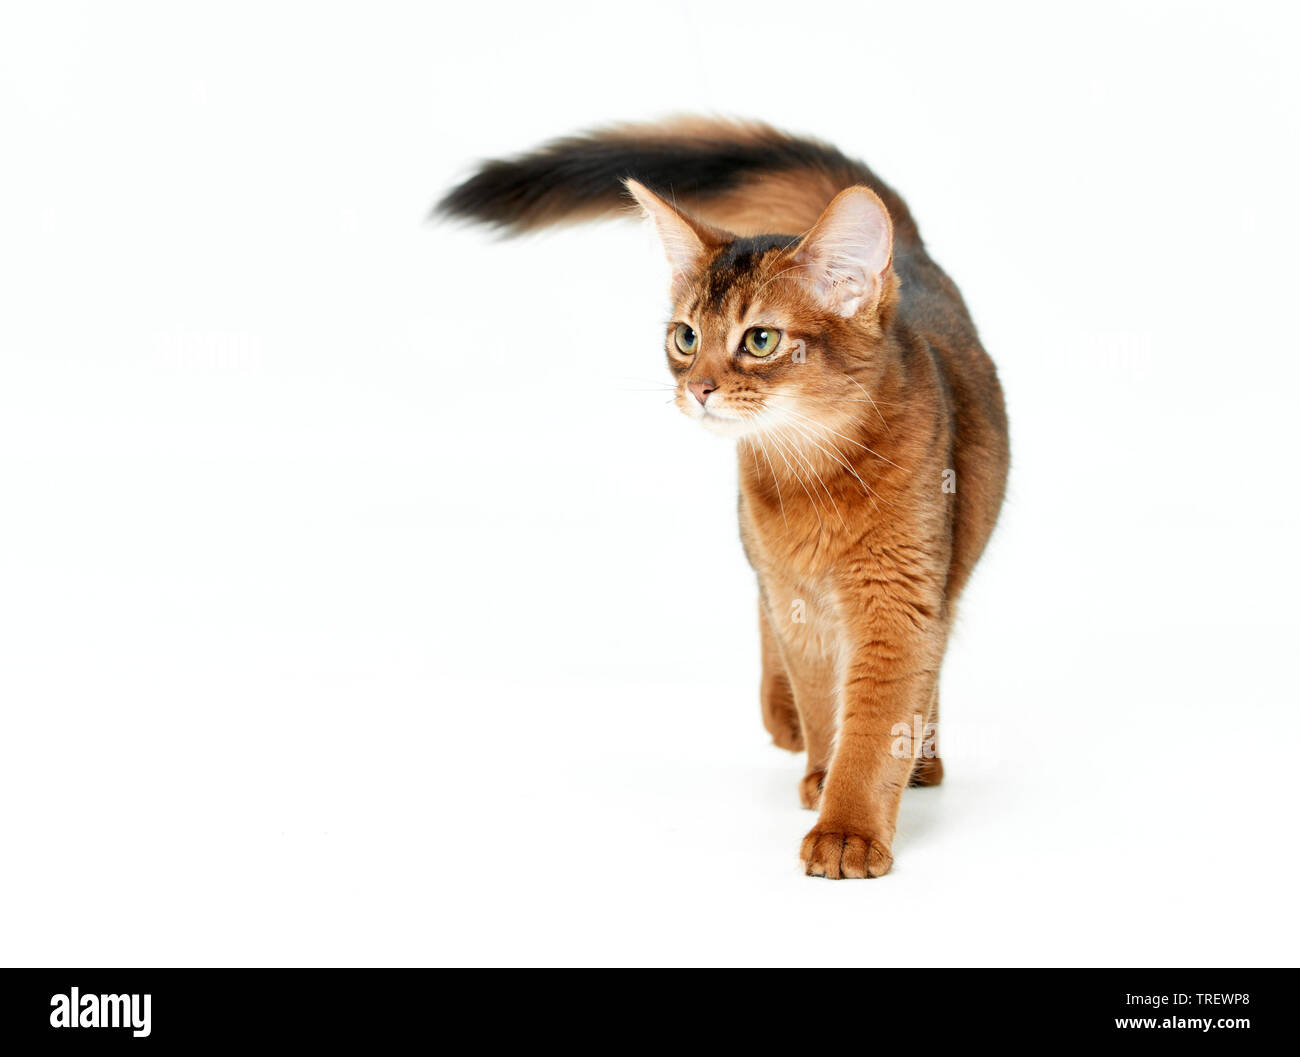 Somali cat. Chaton marche, vu de face. Studio photo sur un fond blanc. Banque D'Images